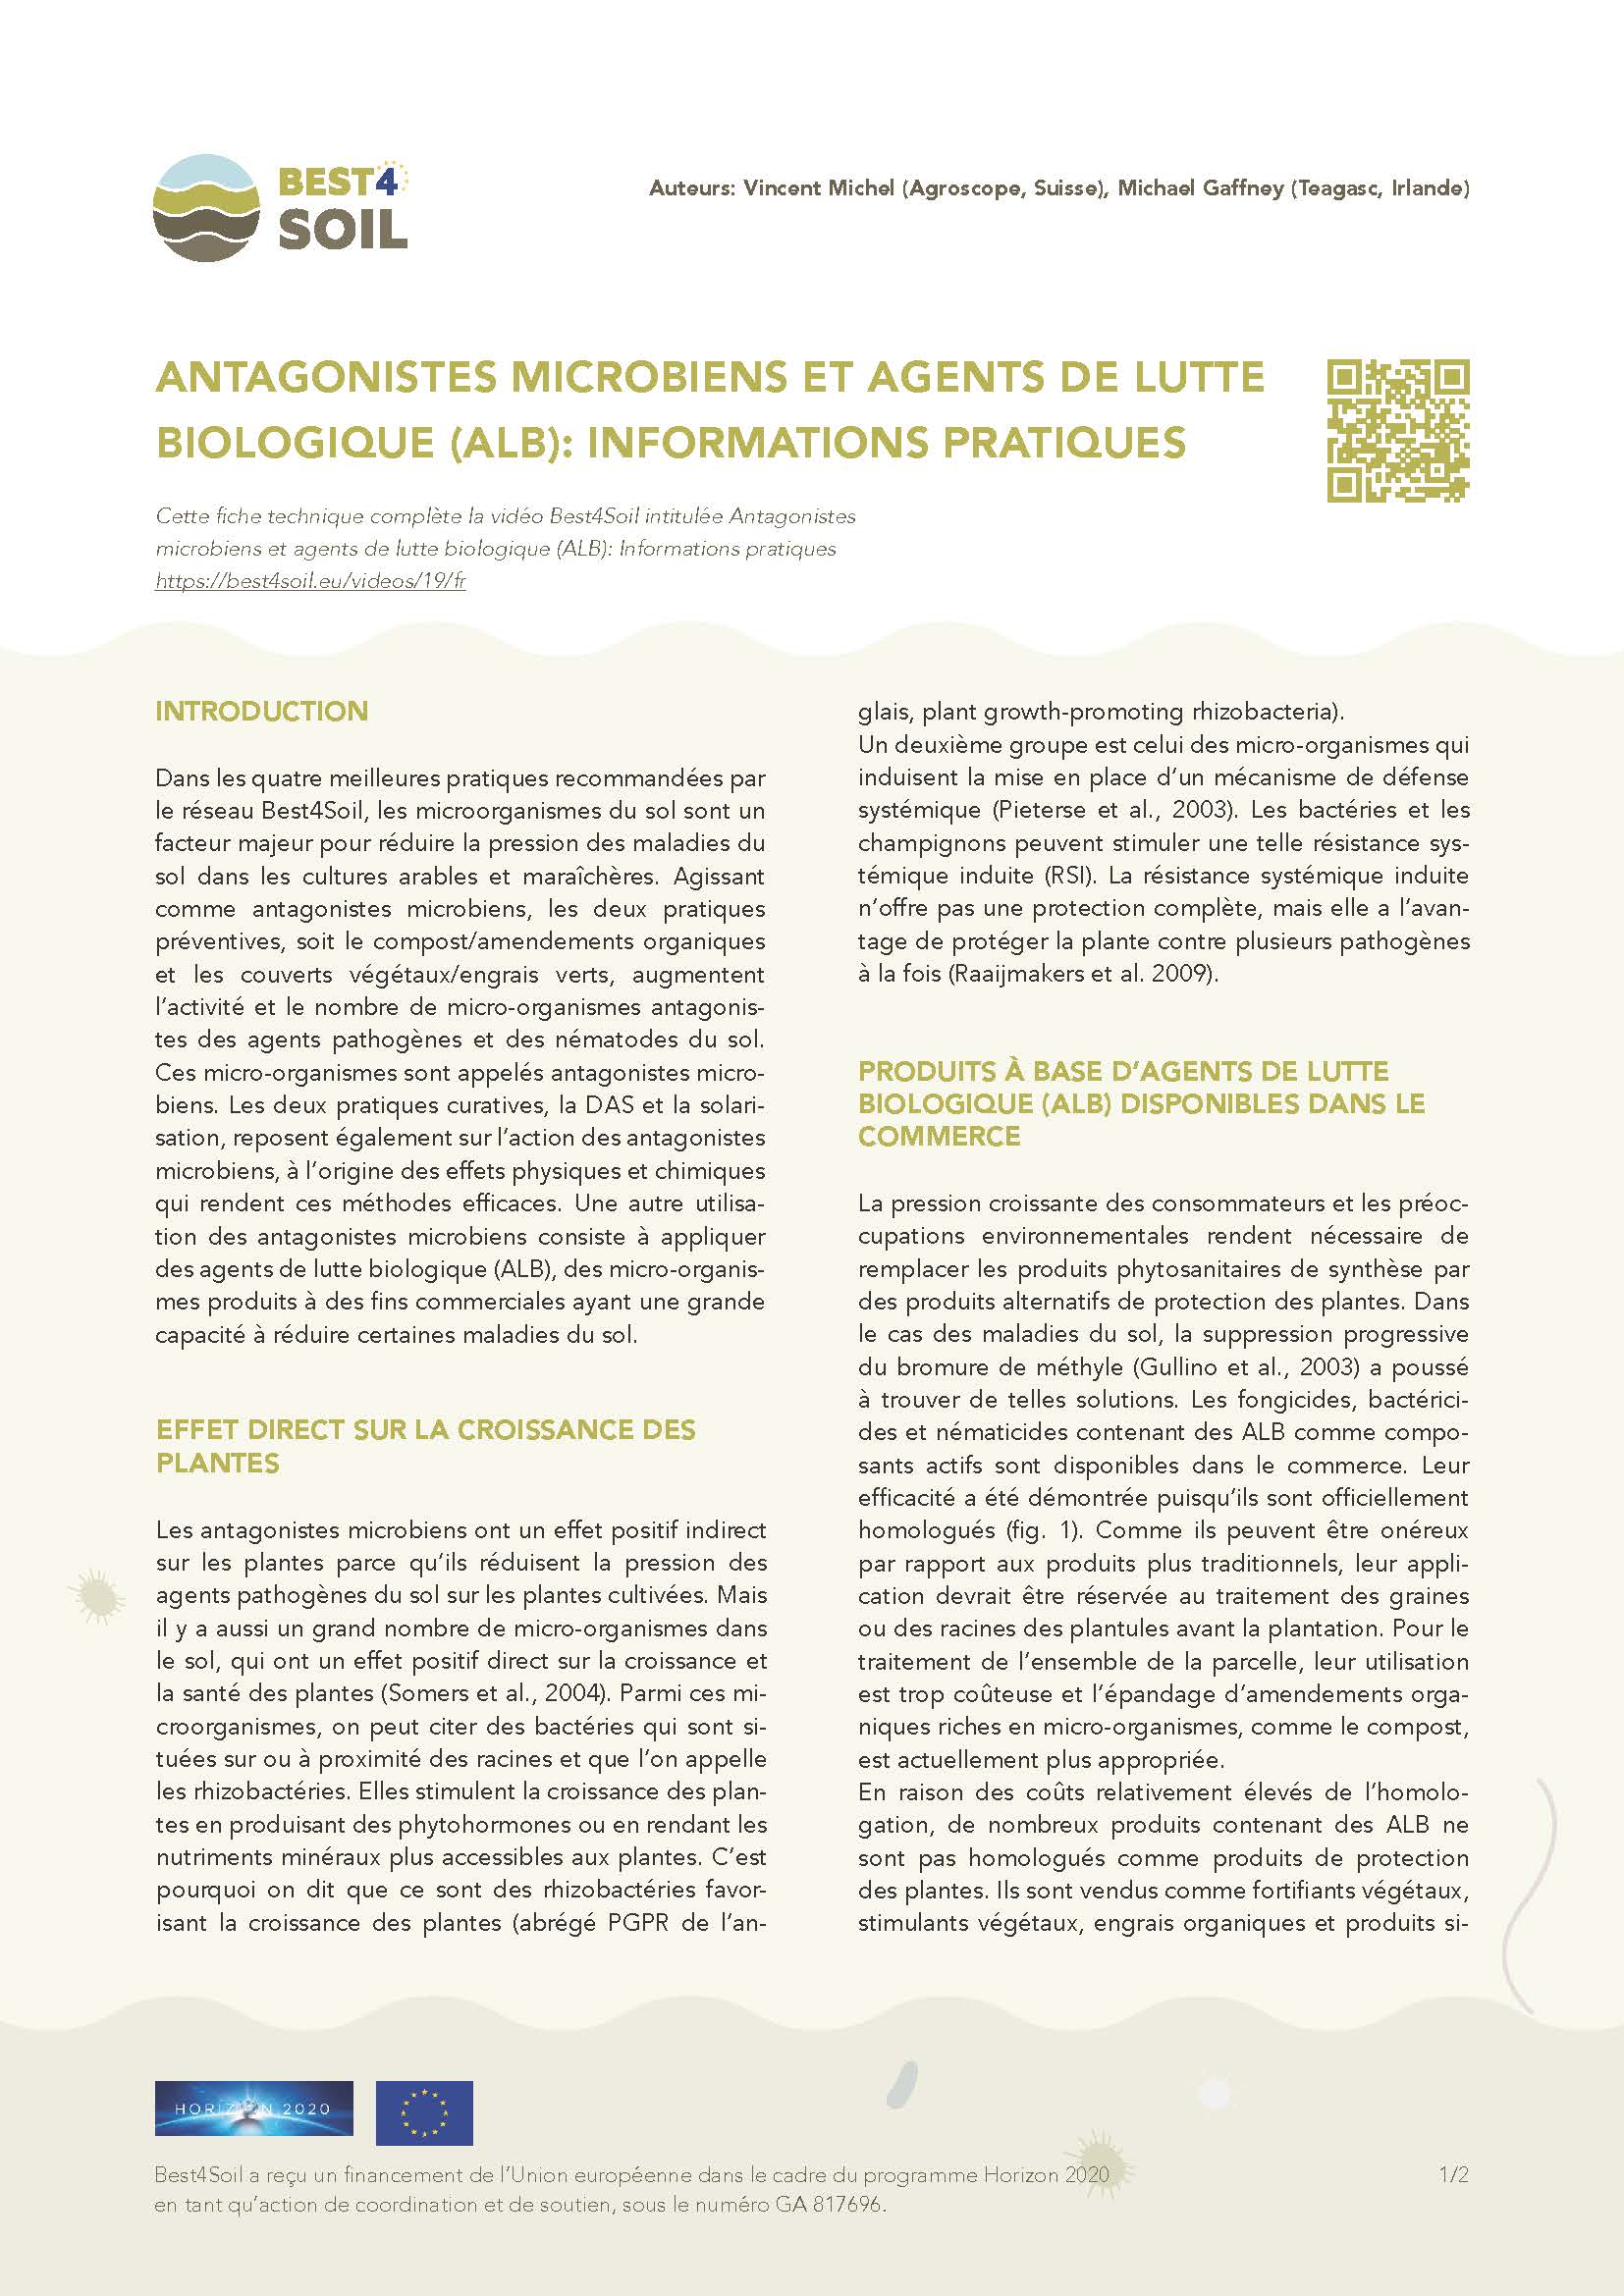 Mikrobiális antagonisták és bca: gyakorlati információk (Best4Soil adatlap)